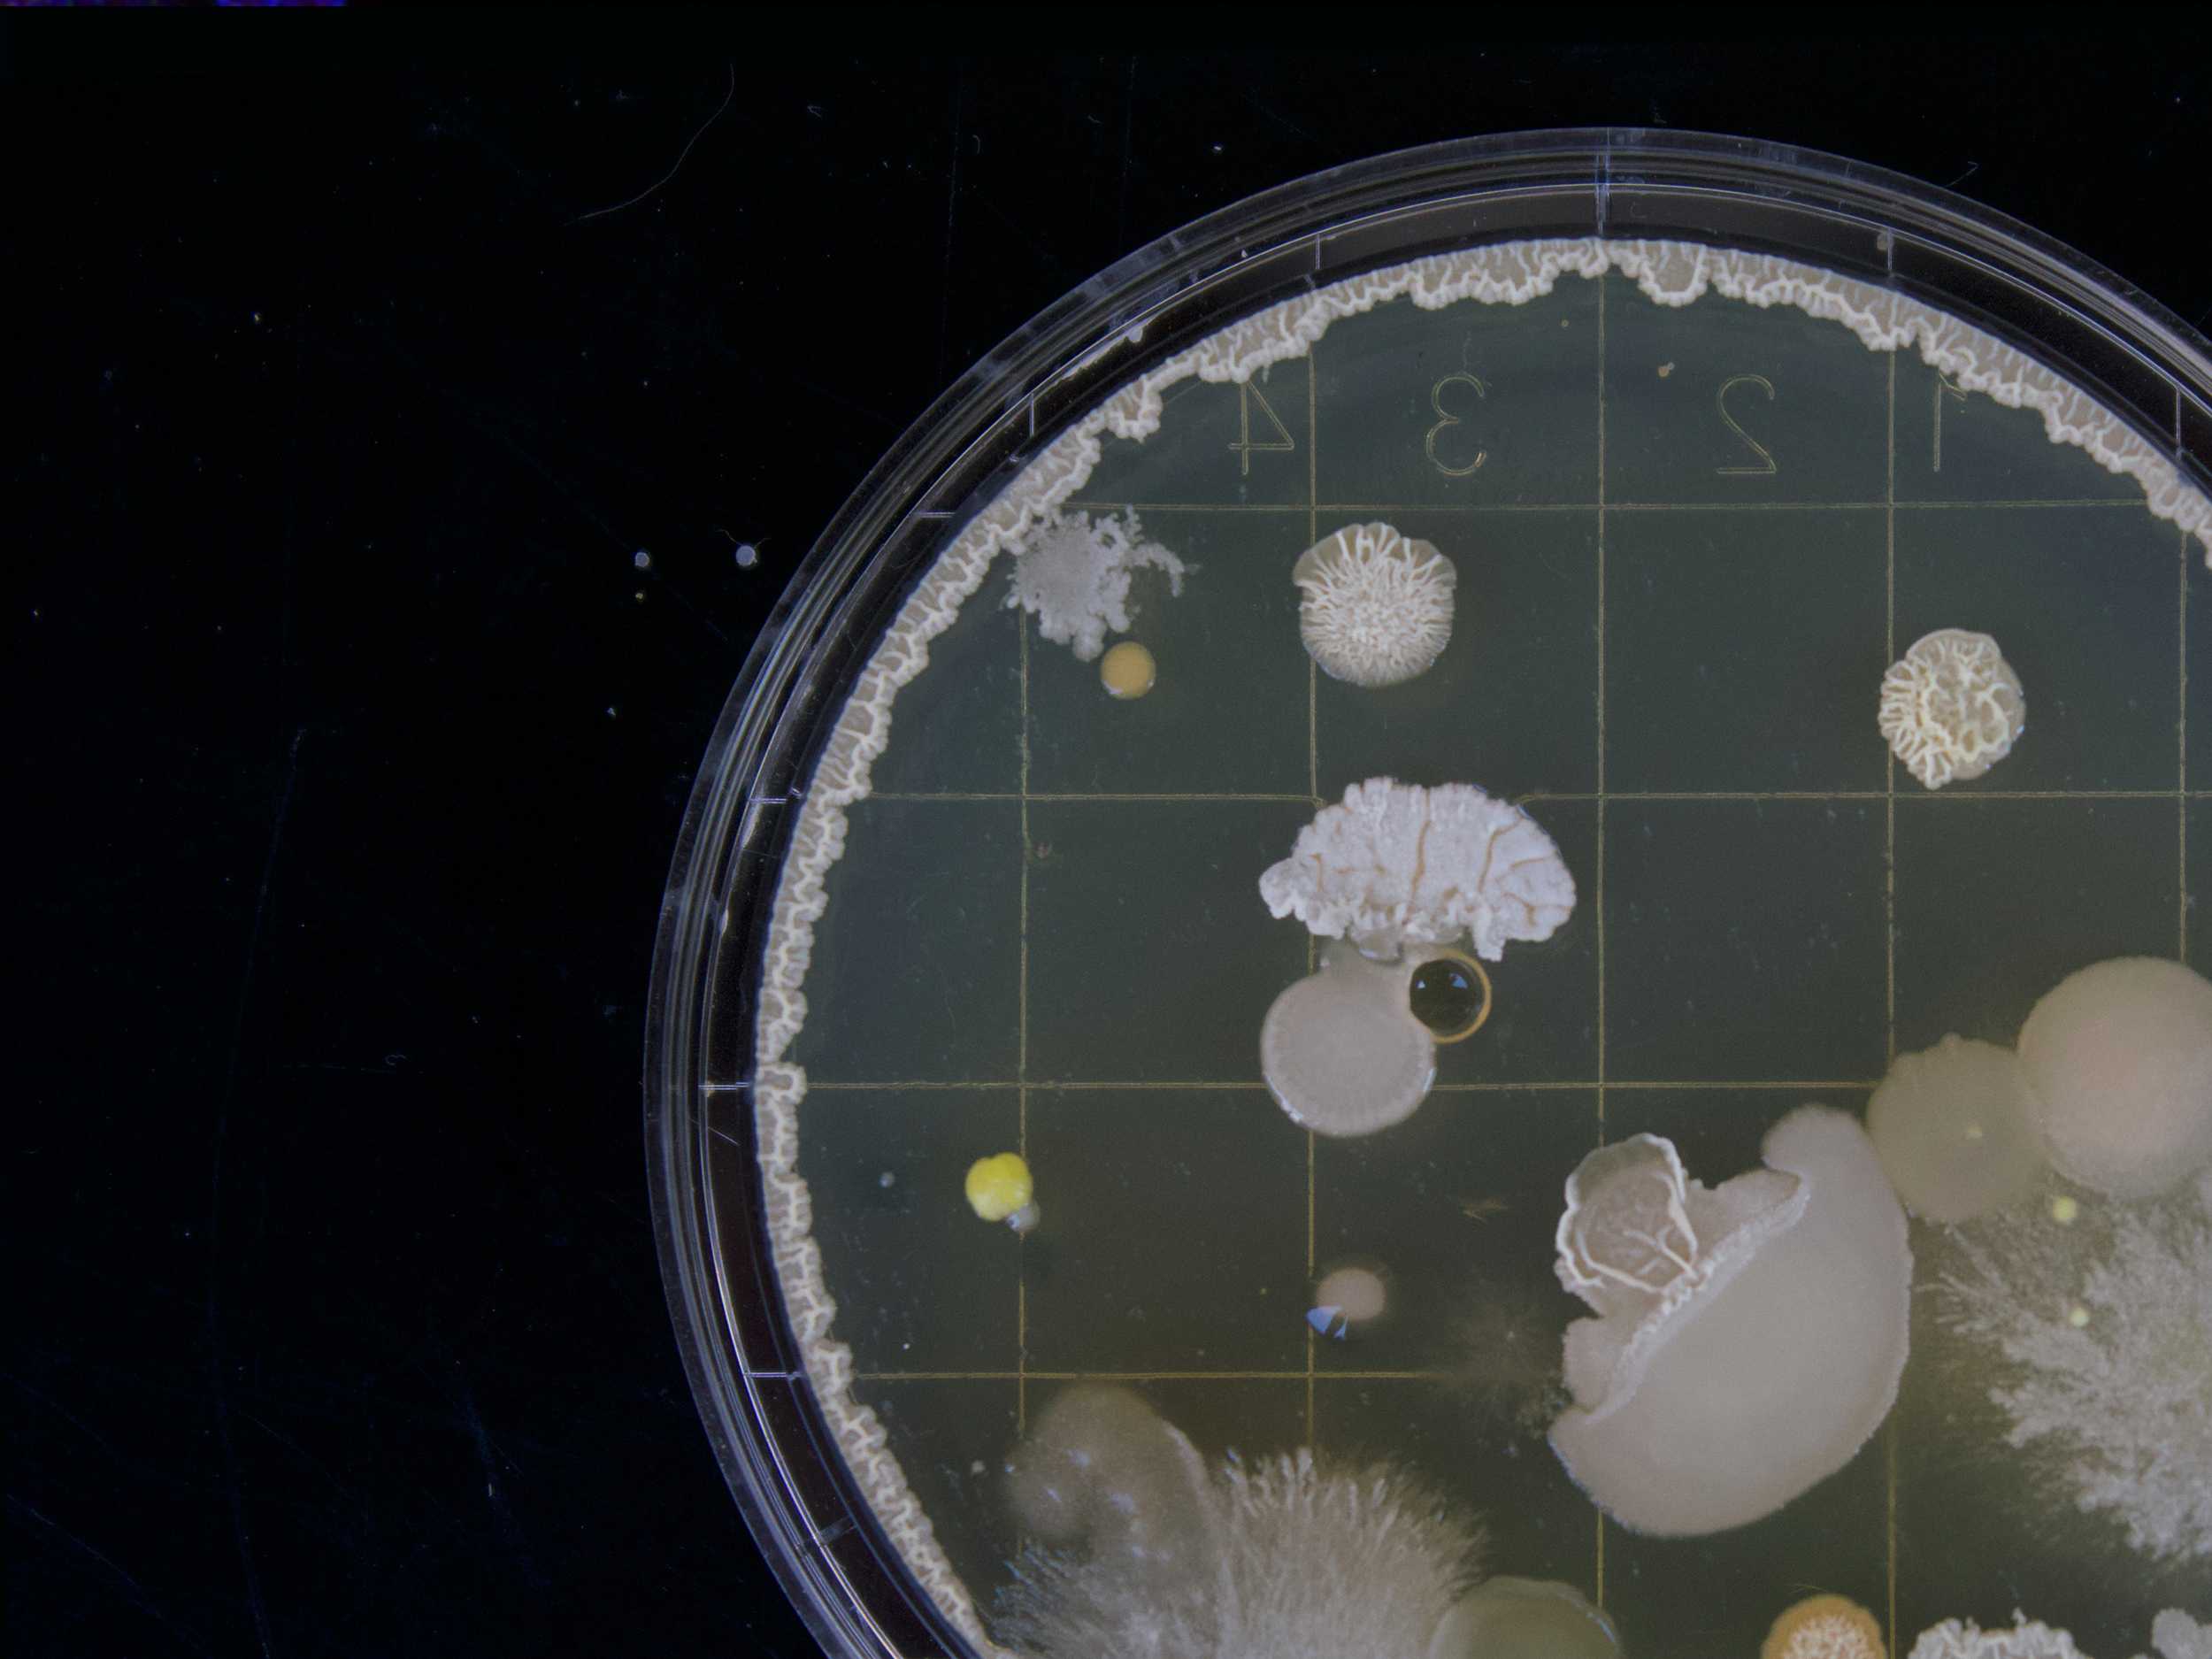 Bacteria sample